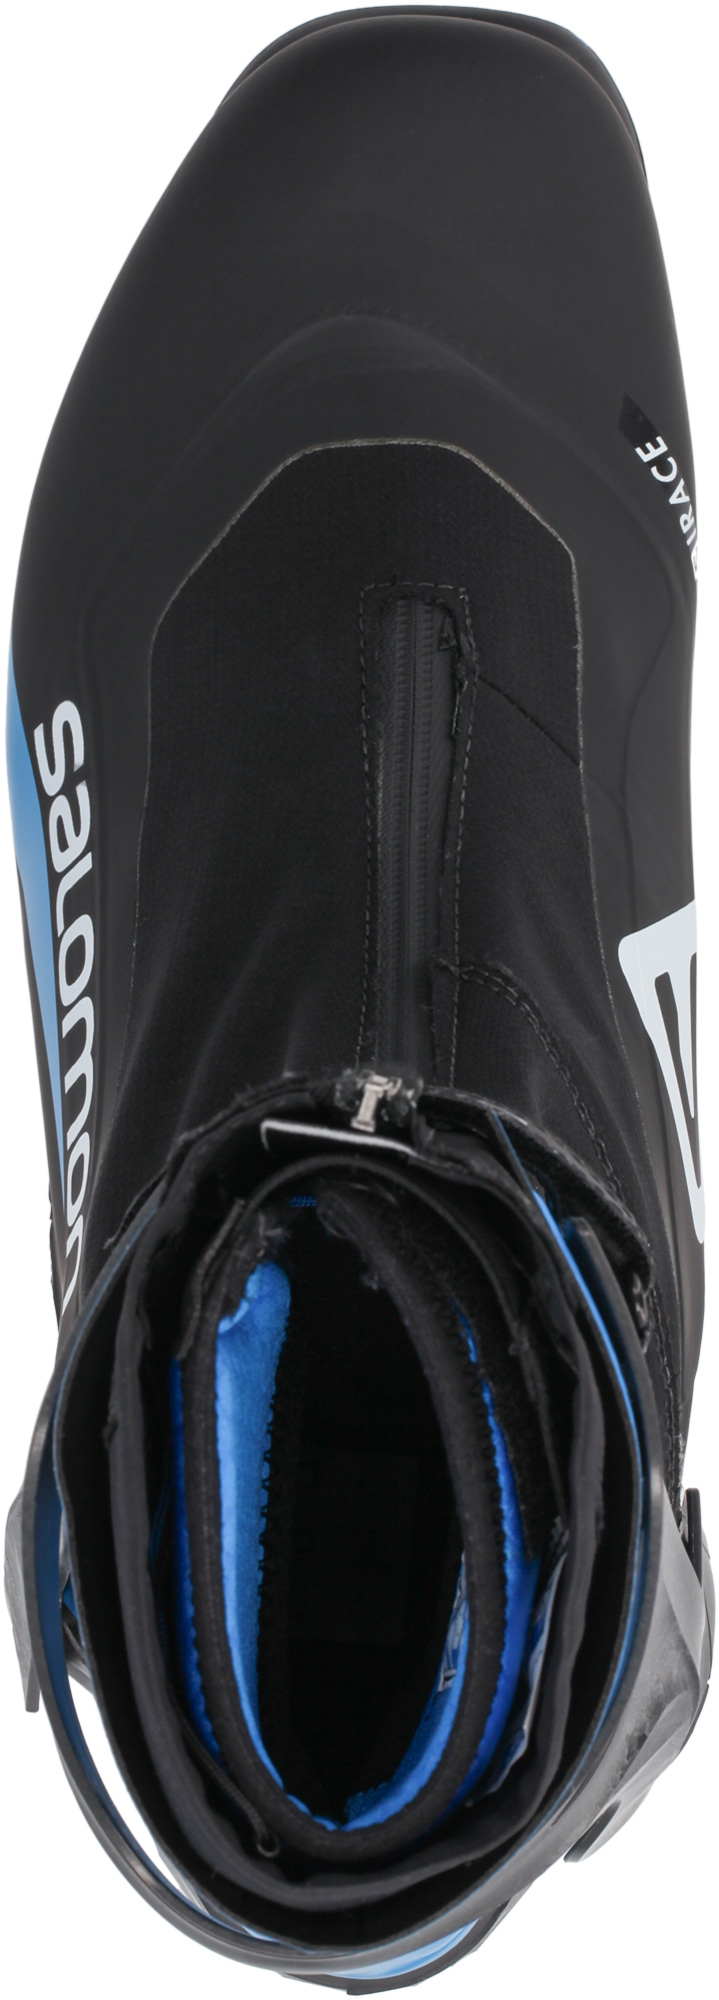 Ботинки для беговых лыж Salomon S/Race Carbon Skate Prolink 2021, black/blue, 43